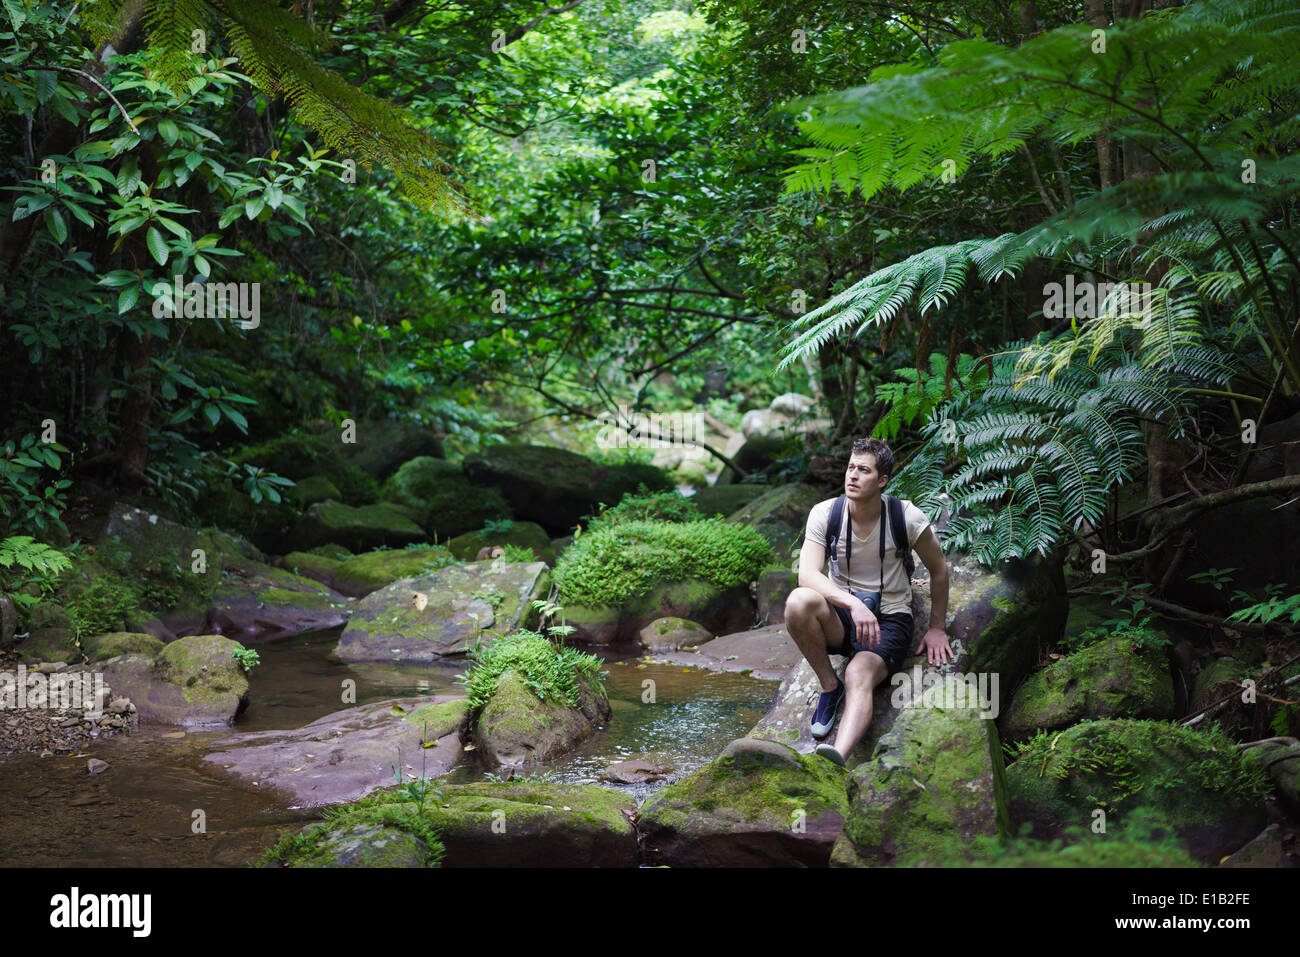 Admirer la nature de l'homme riche forêt tropicale luxuriante dans l'île d'Iriomote, Okinawa, Japon Banque D'Images